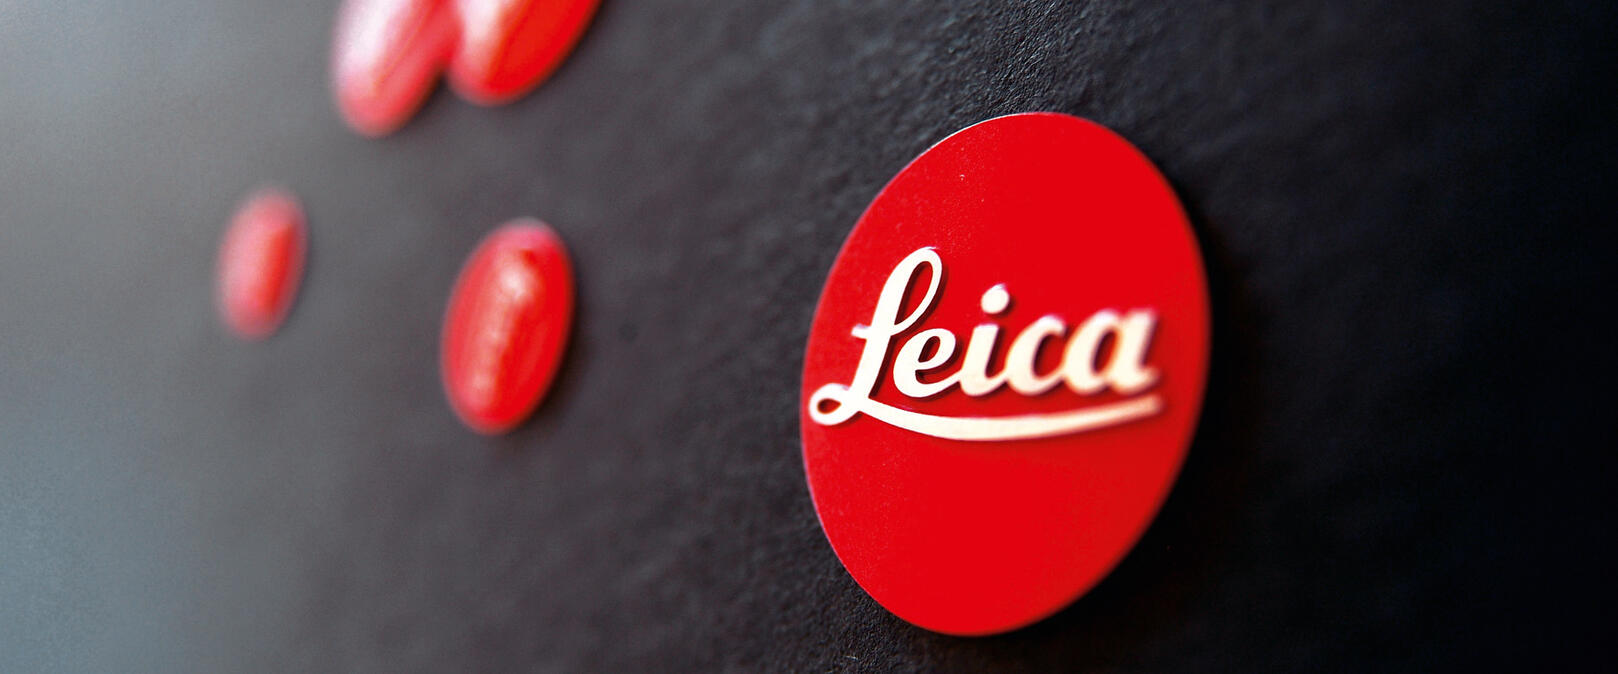 Leica Logos new